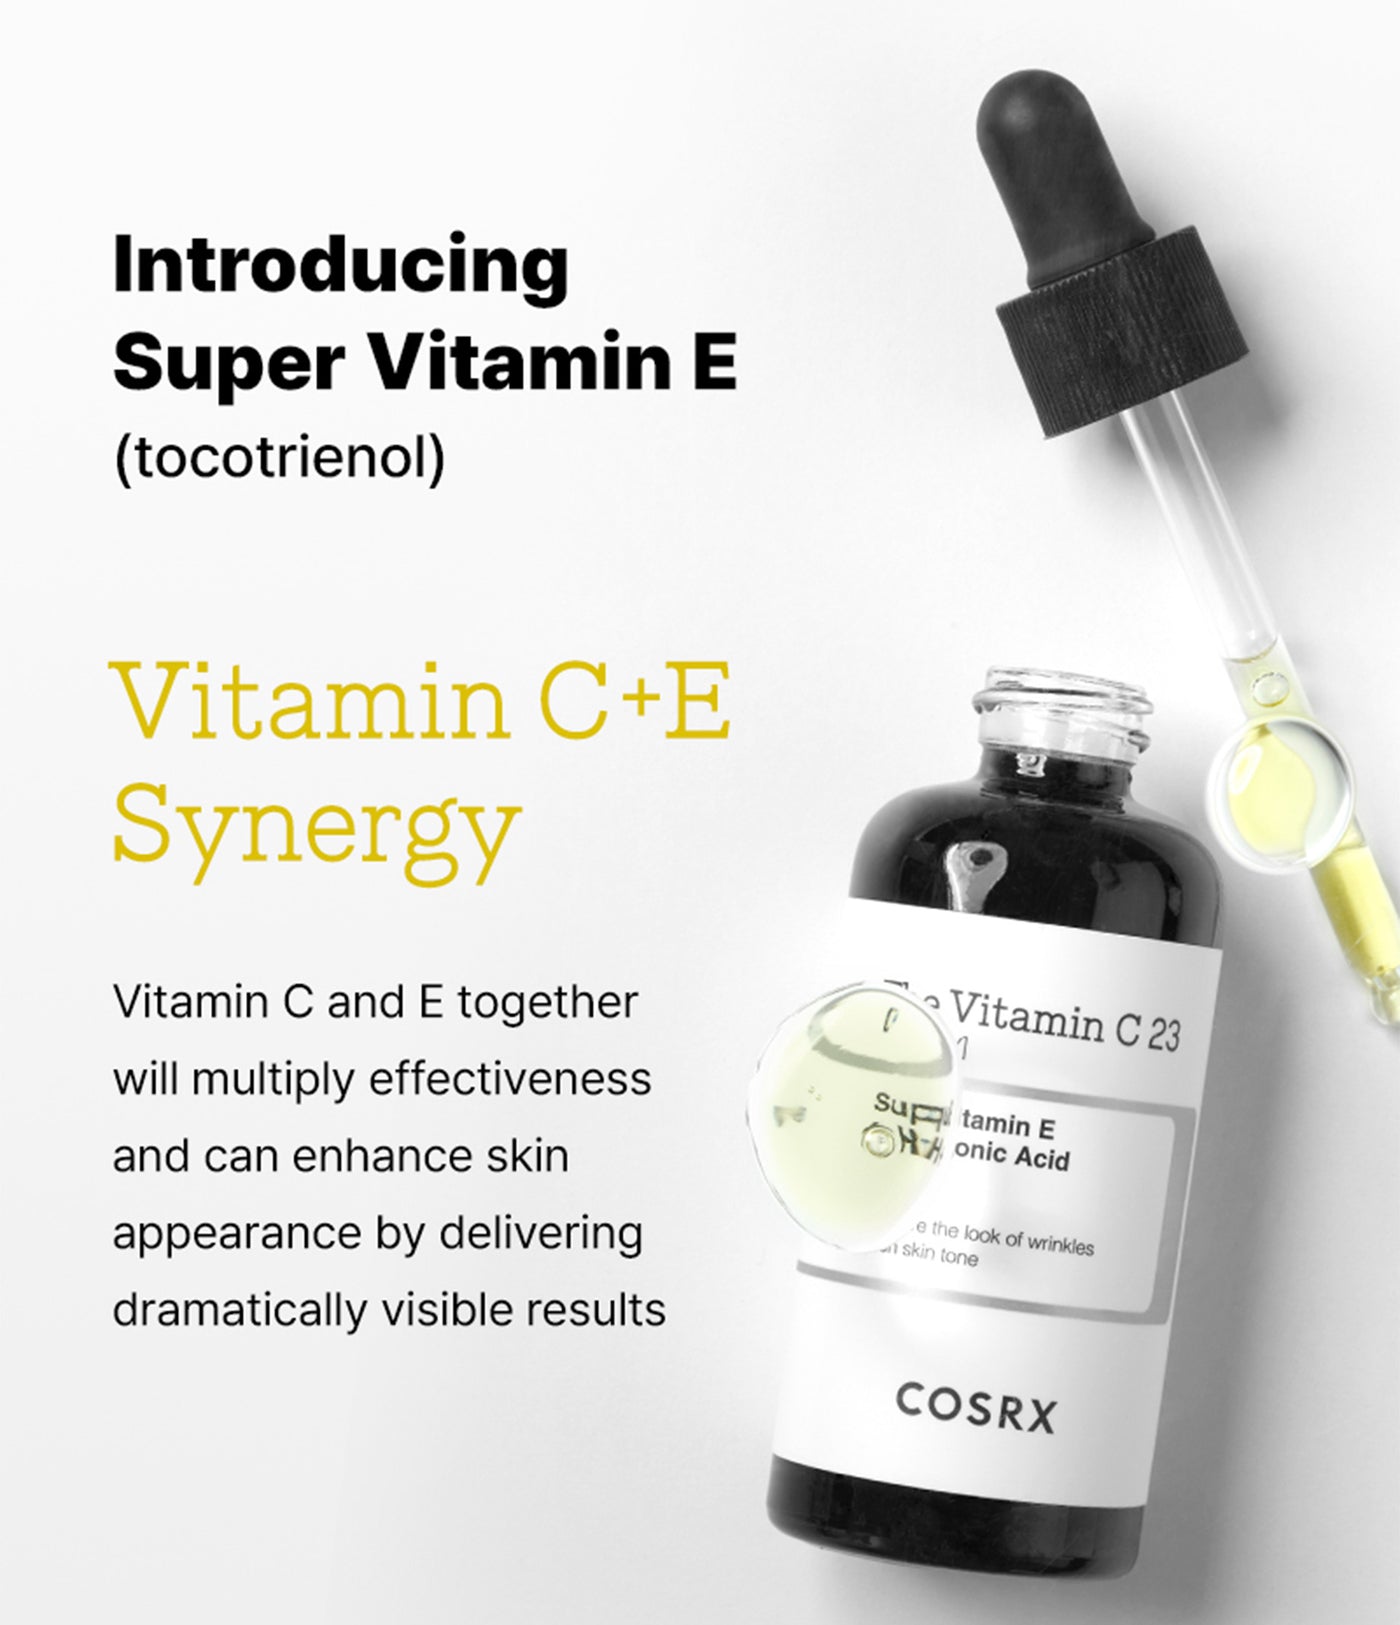 Tinh chất Cosrx The Vitamin C 23 Giải pháp hoàn hảo cho làn da sáng mịn